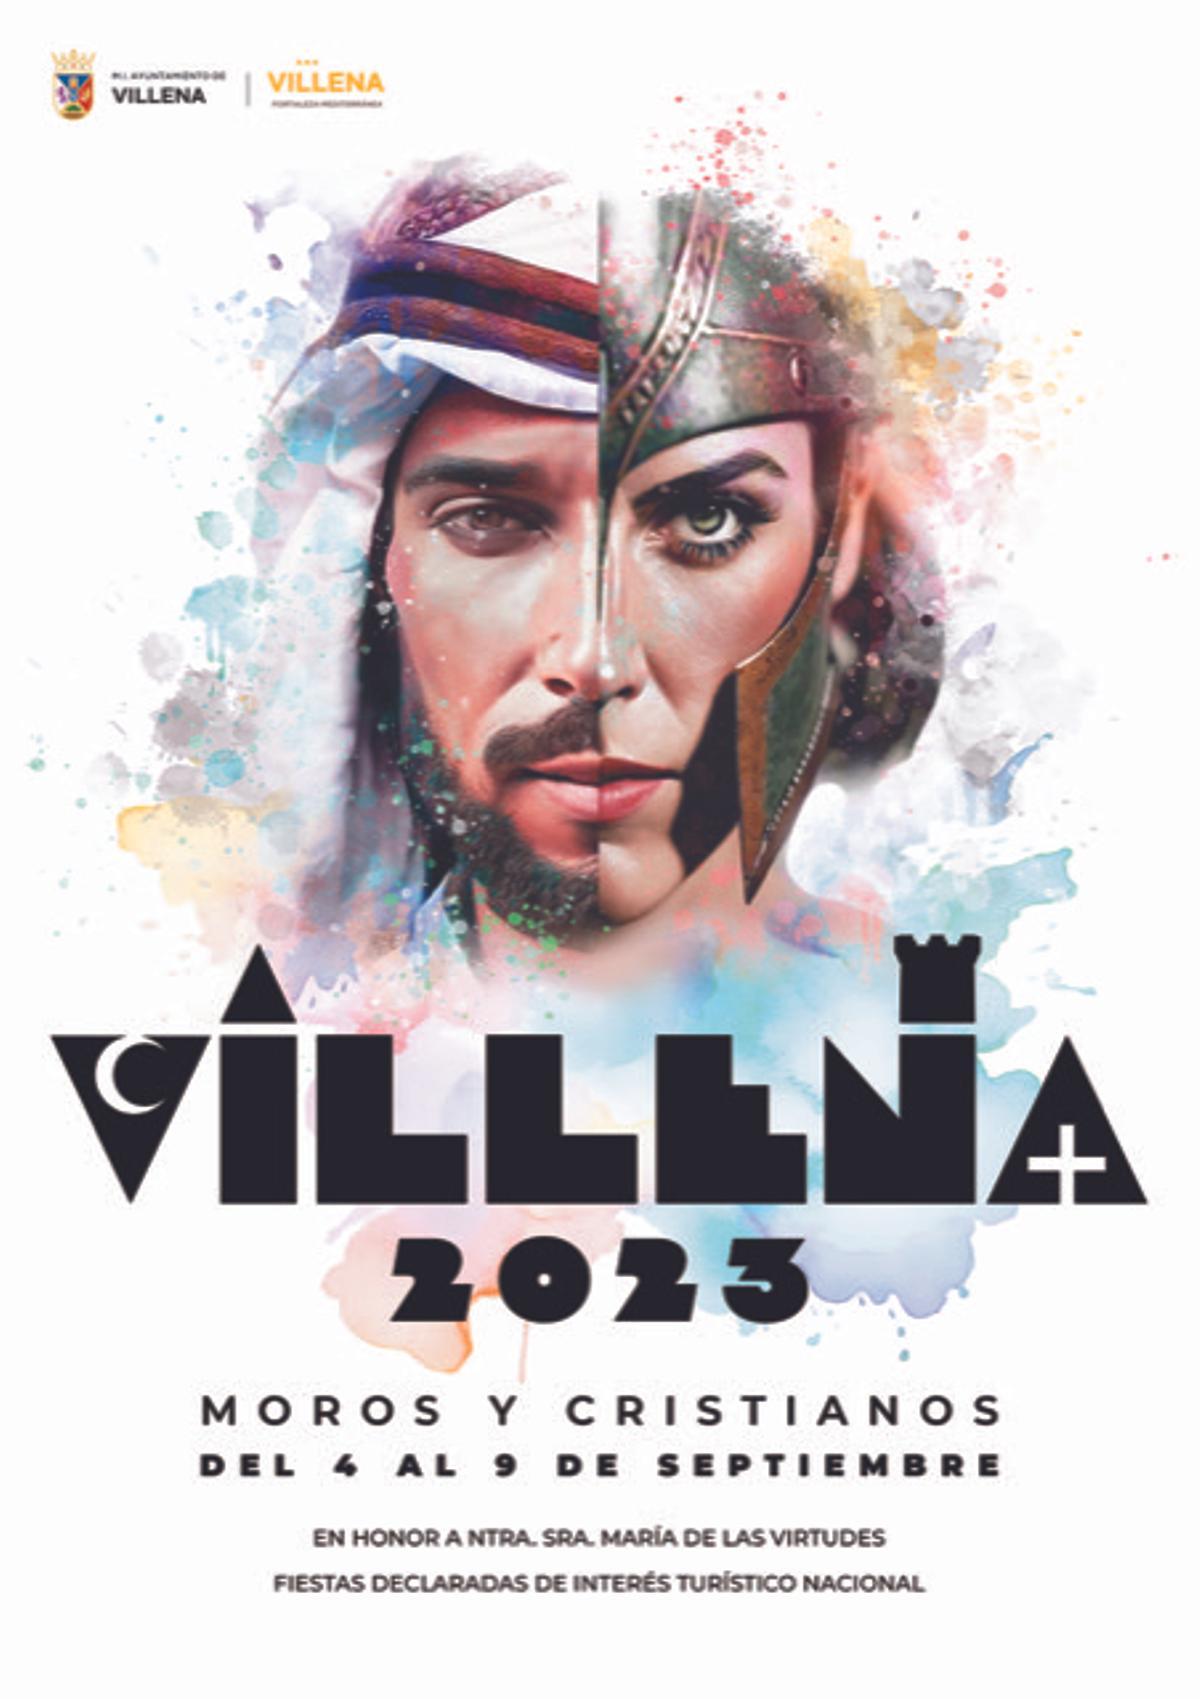 El cartel de las fiestas de Villena de 2023.